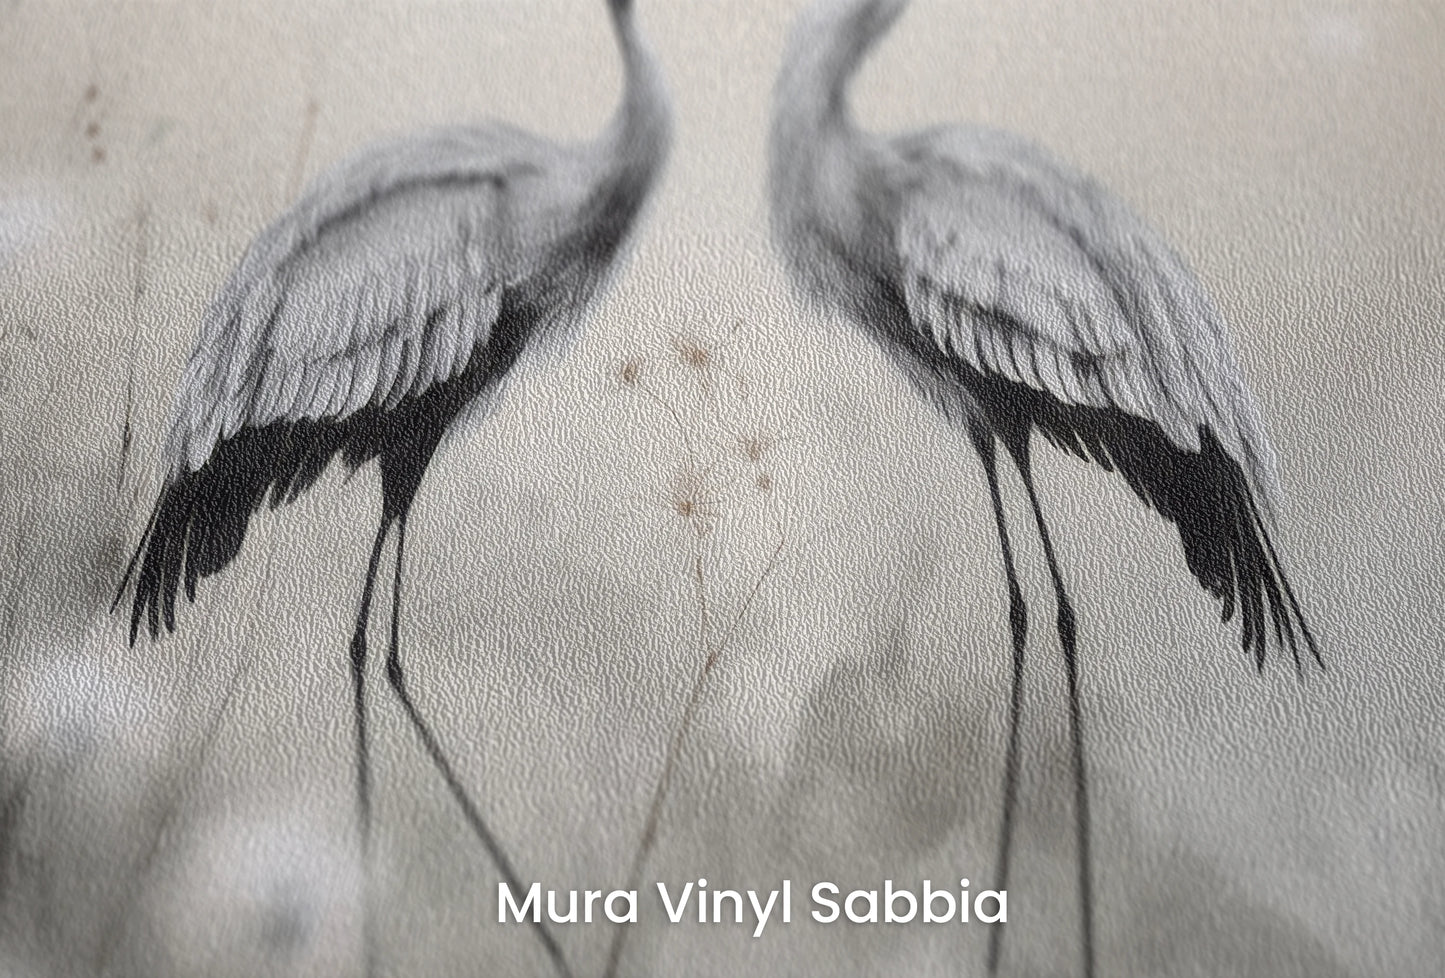 Zbliżenie na artystyczną fototapetę o nazwie Dandelion Wishes na podłożu Mura Vinyl Sabbia struktura grubego ziarna piasku.